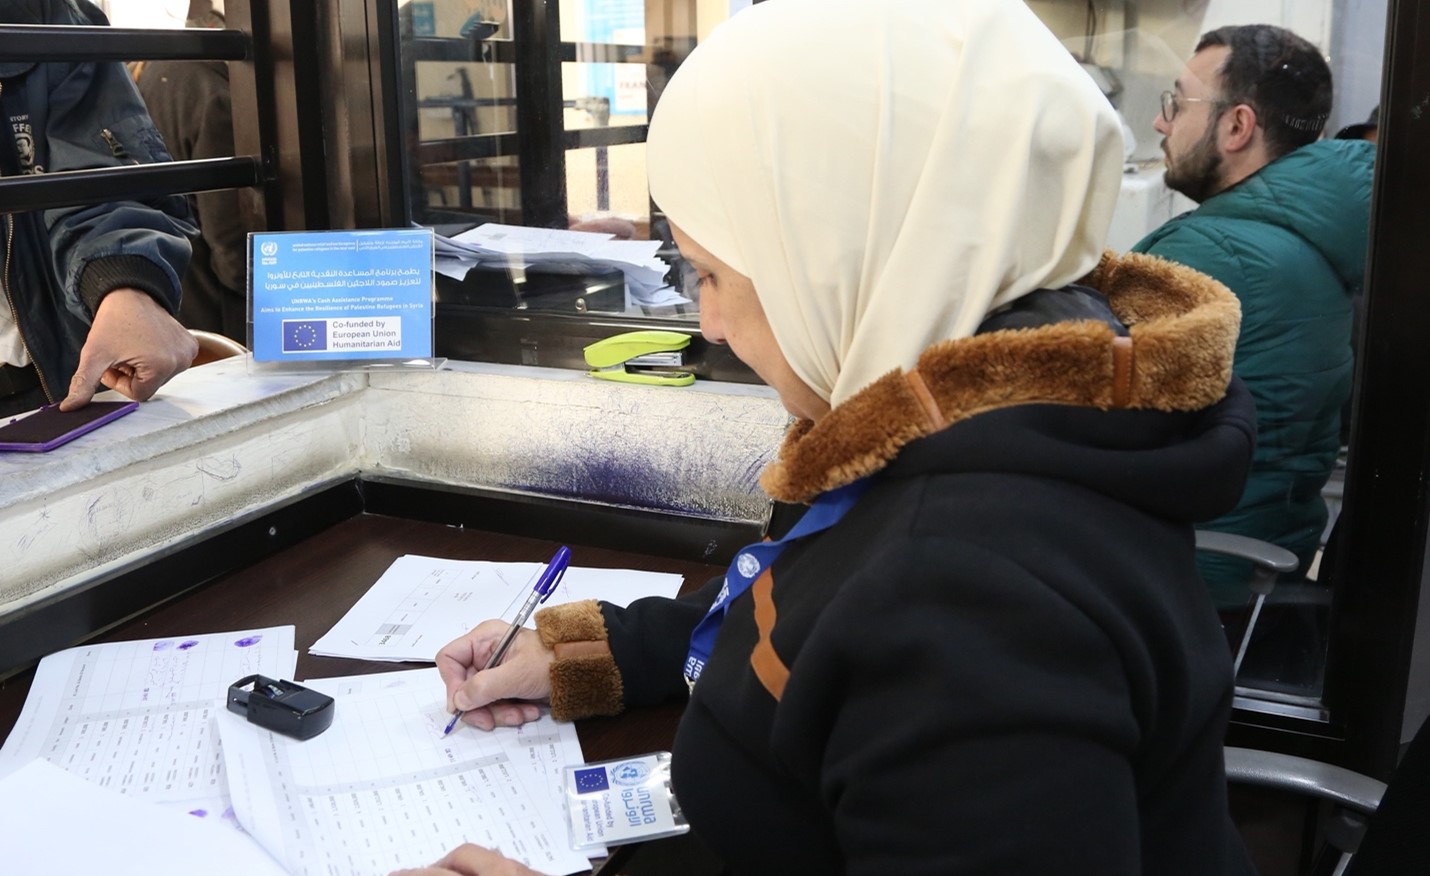 La asistencia de UNRWA en Siria: “Sentimos que esta ayuda es una bendición mientras estamos en la pobreza”  